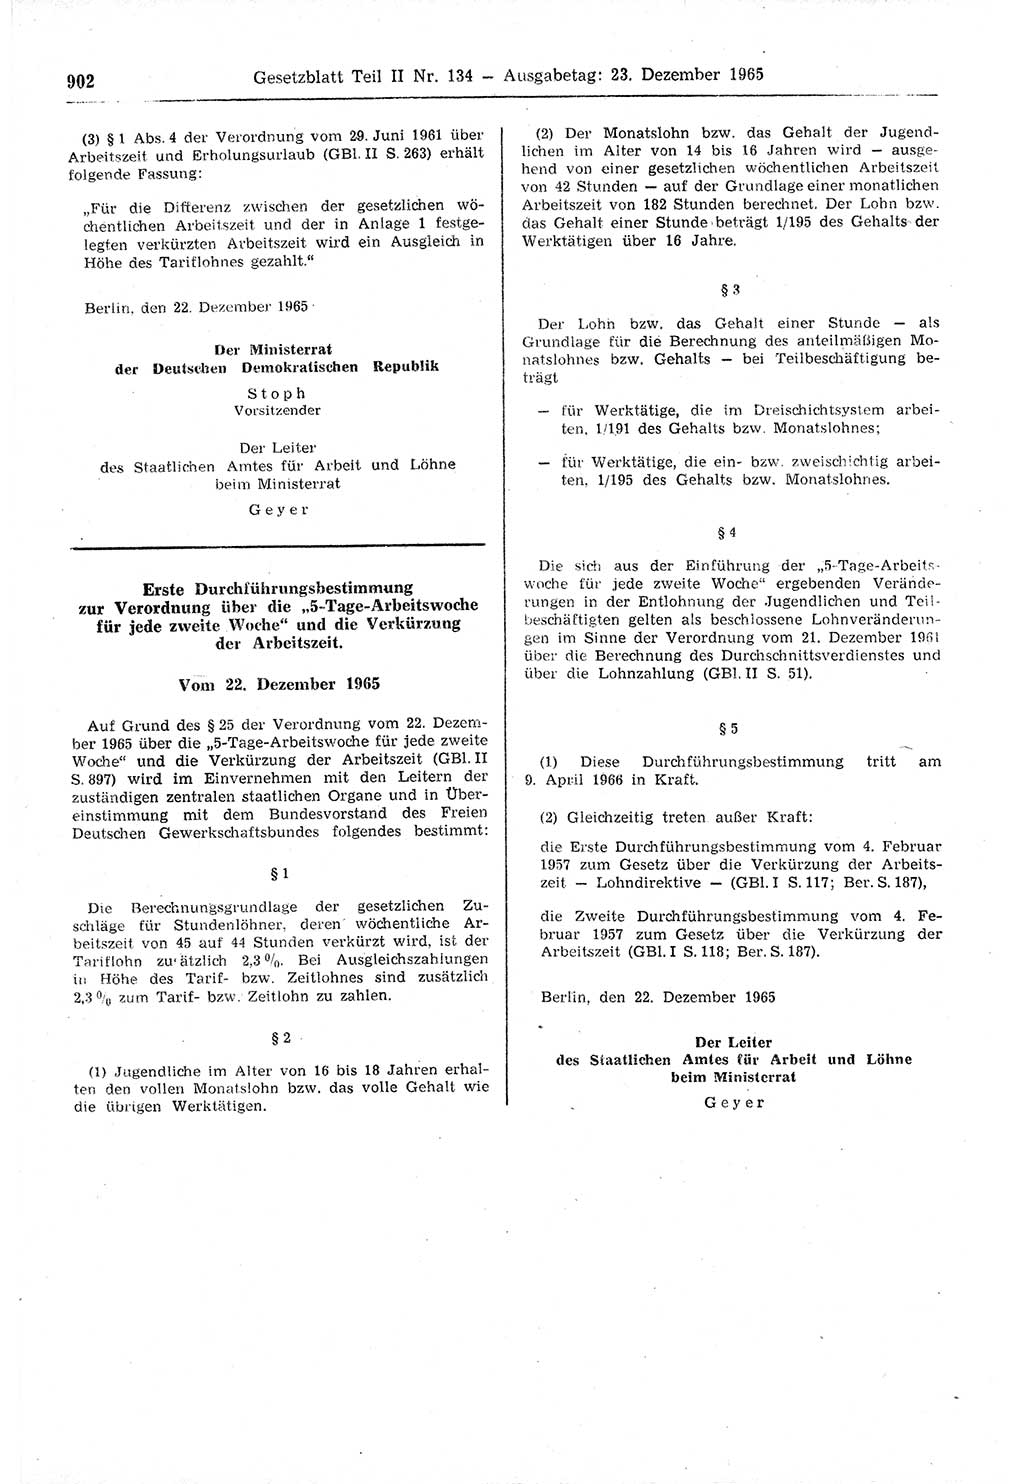 Gesetzblatt (GBl.) der Deutschen Demokratischen Republik (DDR) Teil ⅠⅠ 1965, Seite 902 (GBl. DDR ⅠⅠ 1965, S. 902)